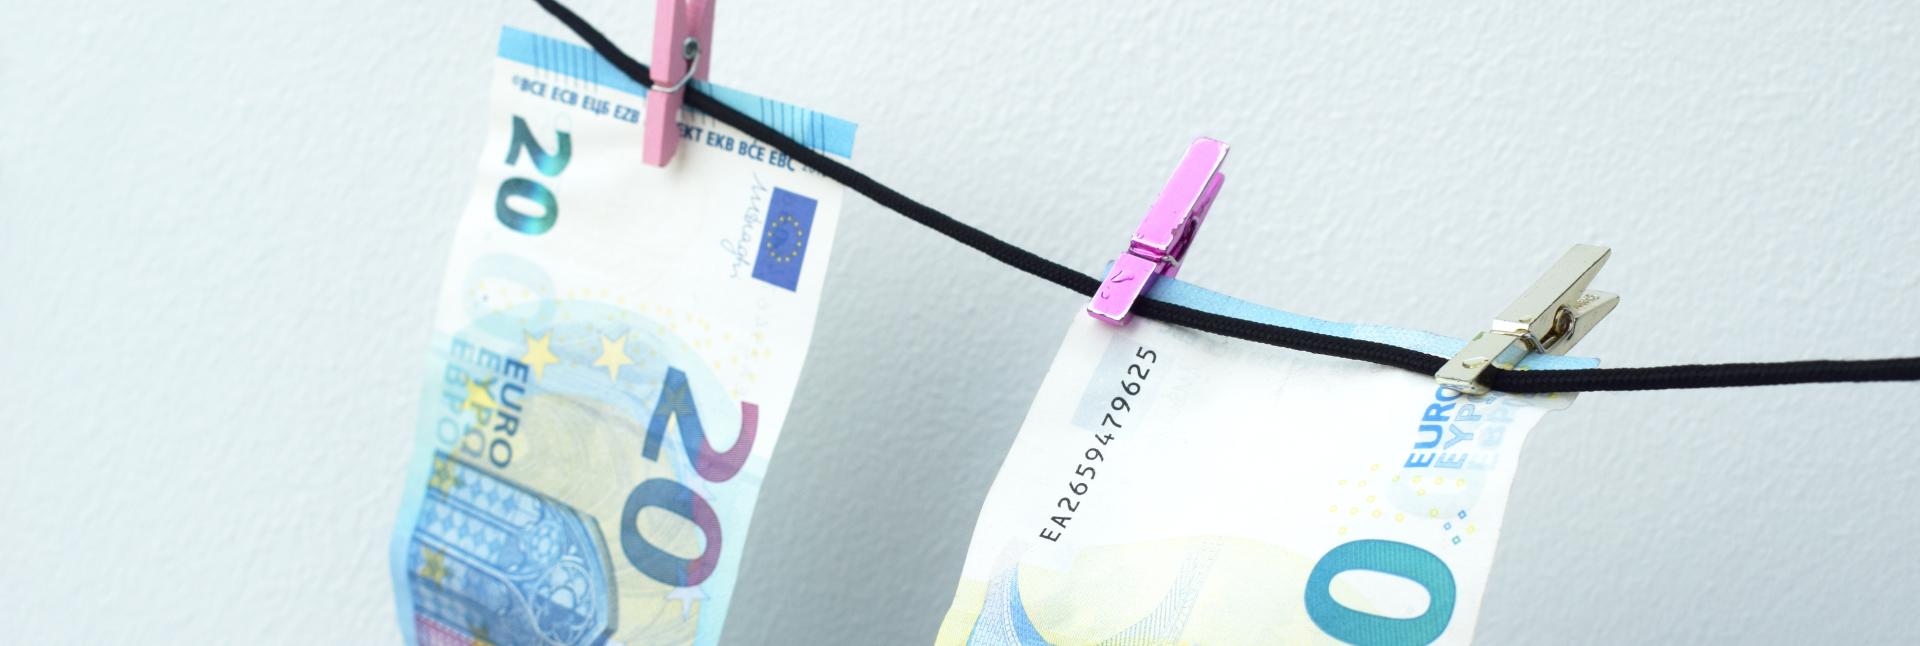 kaksi kahdenkymmenen euron seteliä kuivamassa pyykkinarulla